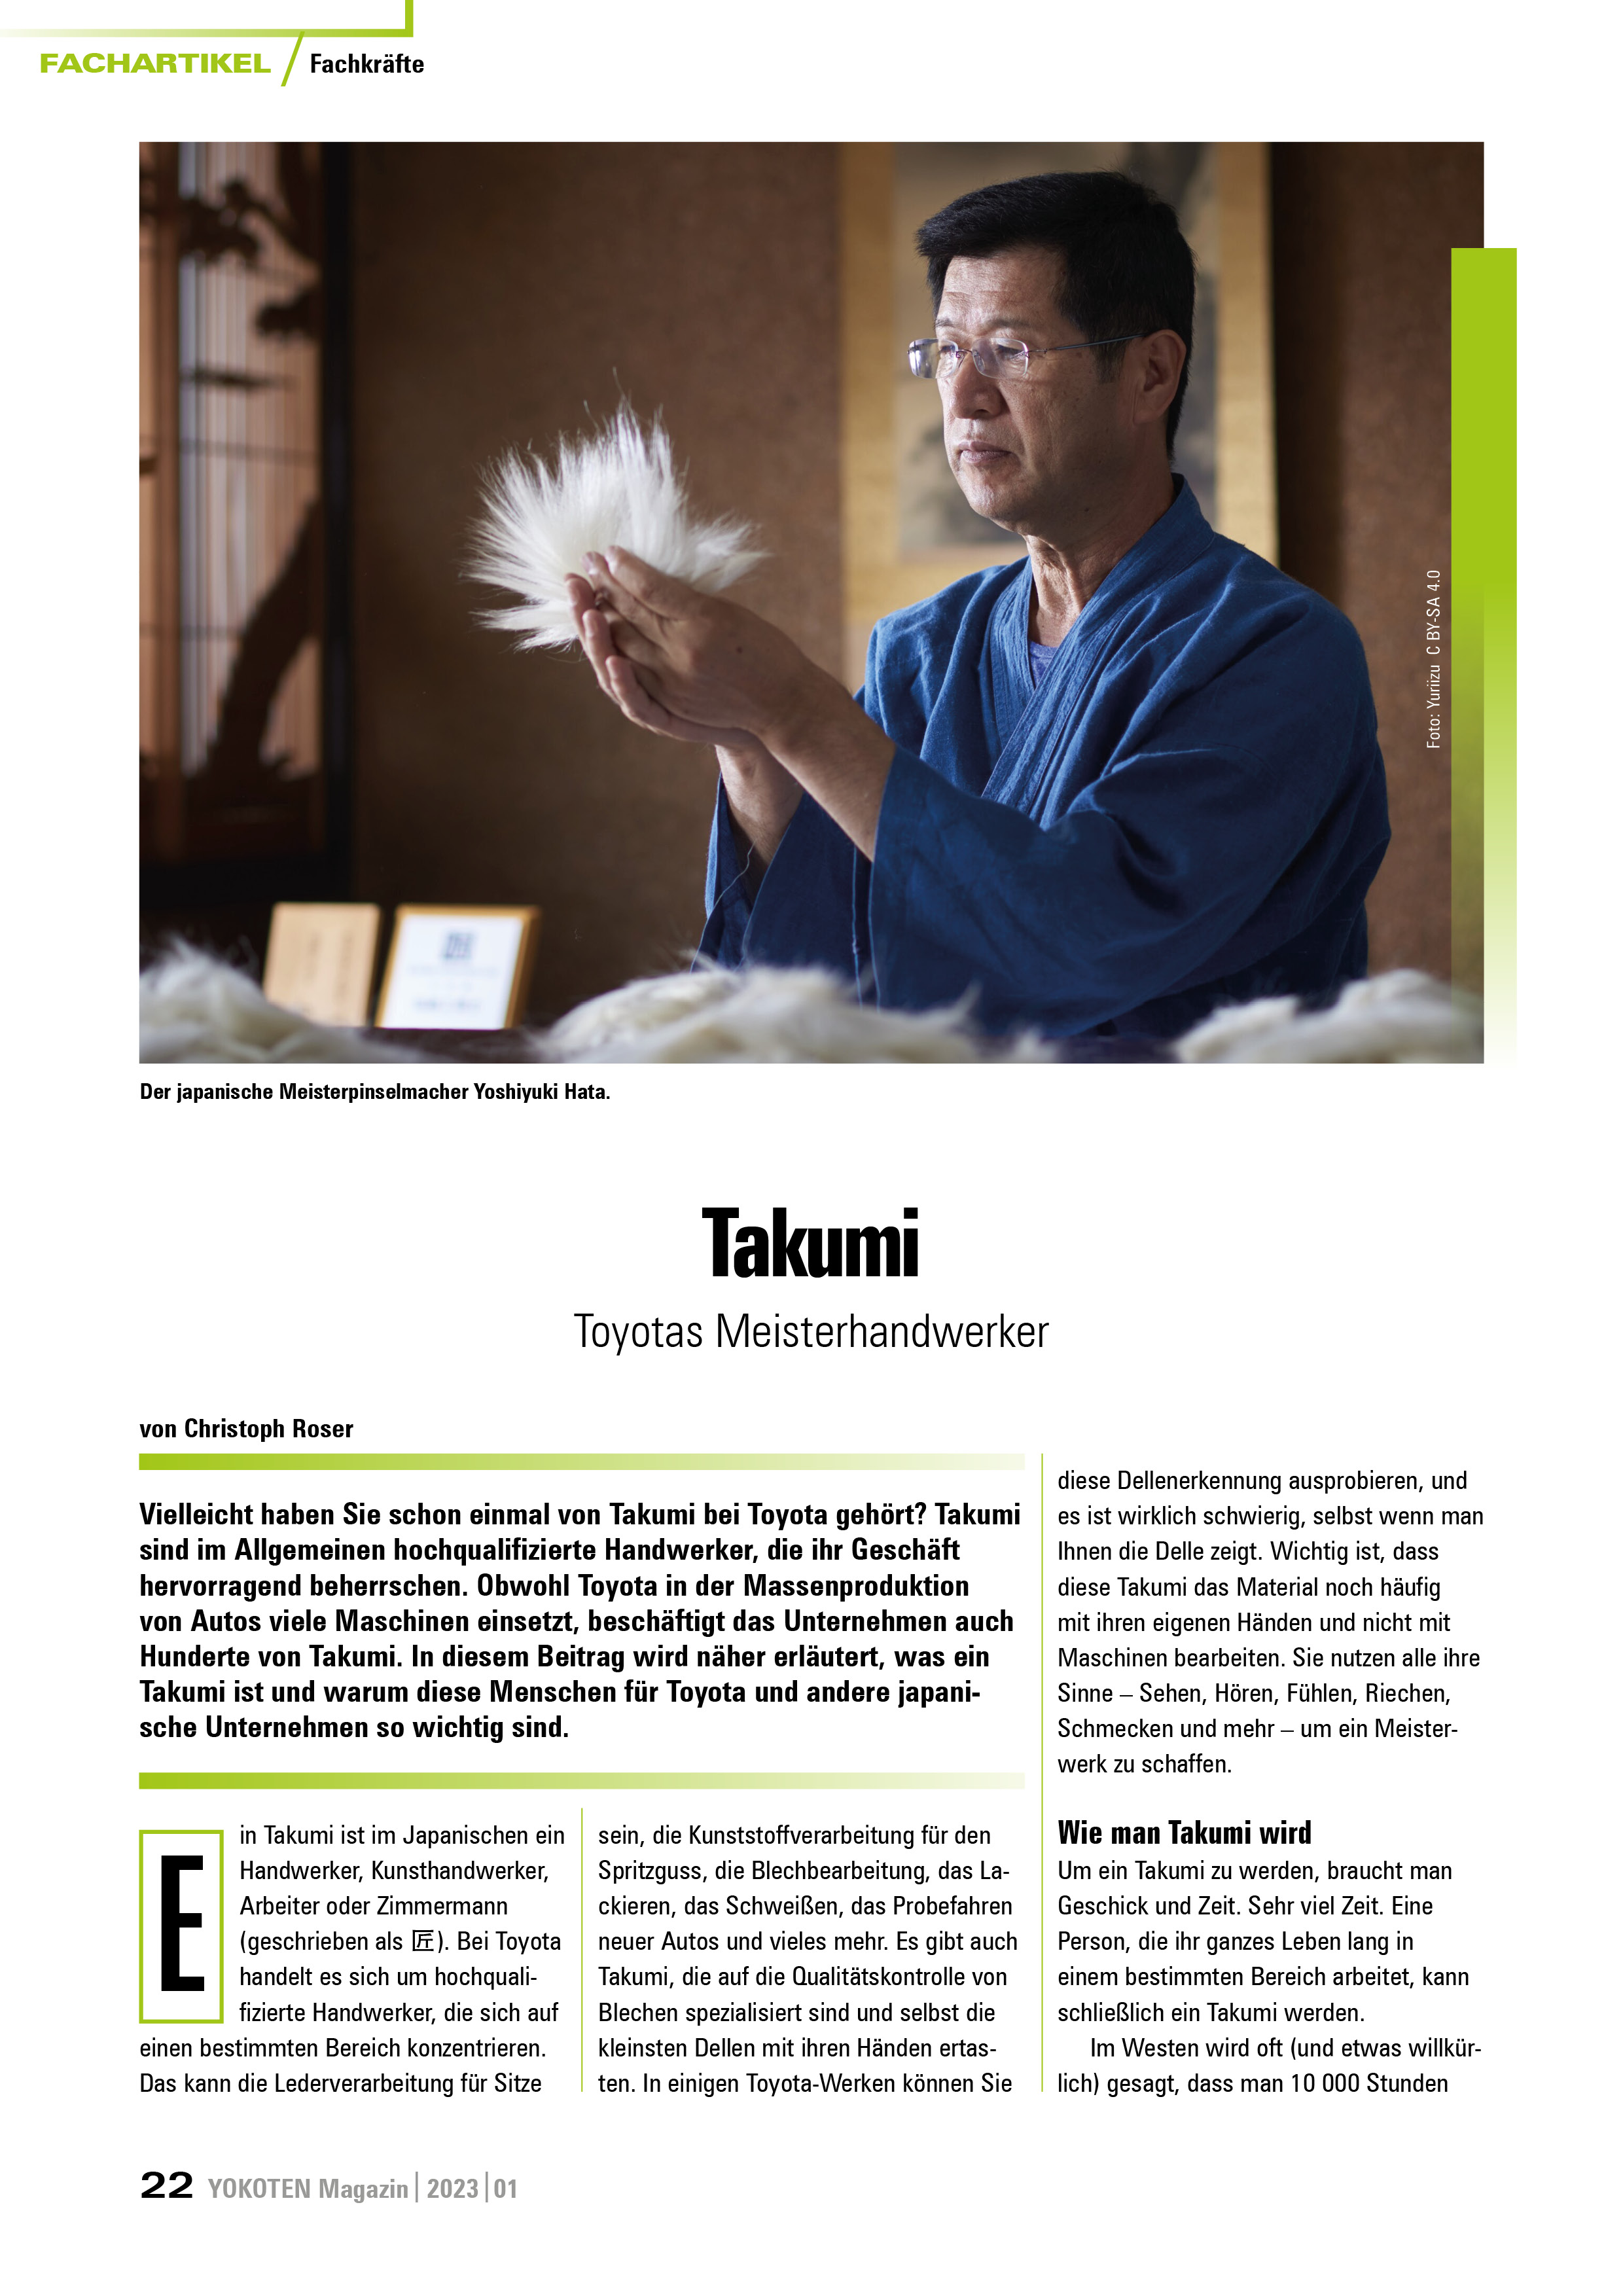 Takumi - Toyotas Meisterhandwerker - Artikel aus Fachmagazin YOKOTEN 2023-01